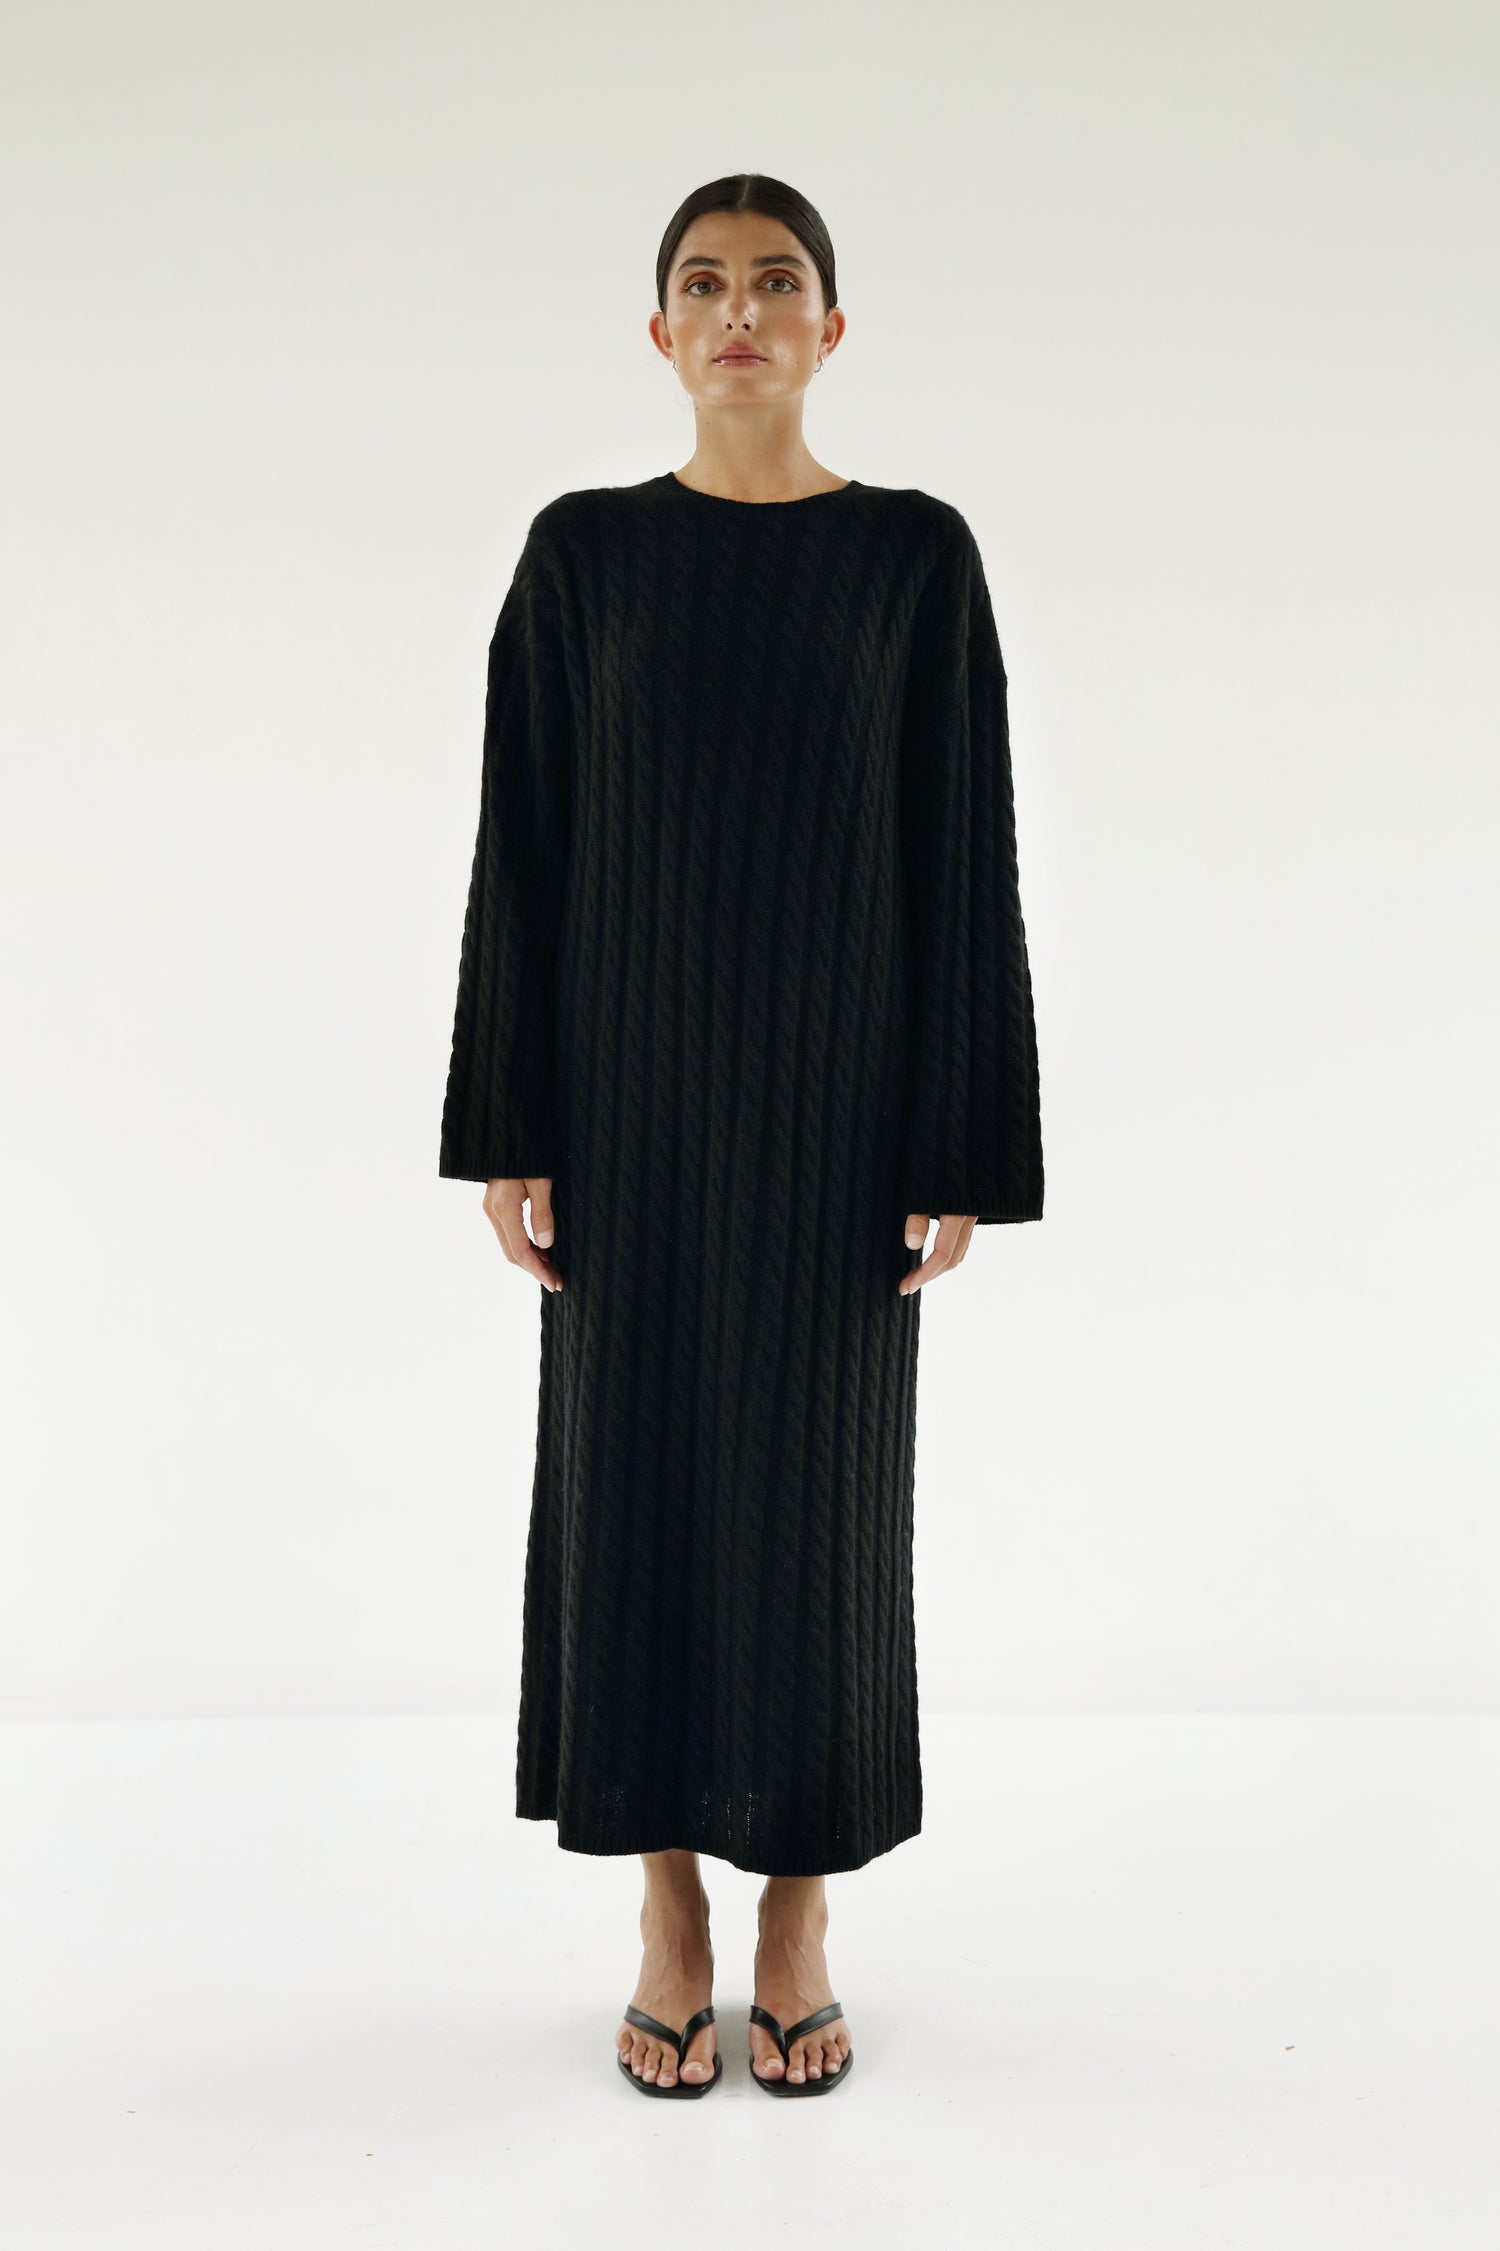 Noma Cable Knit Dress, black